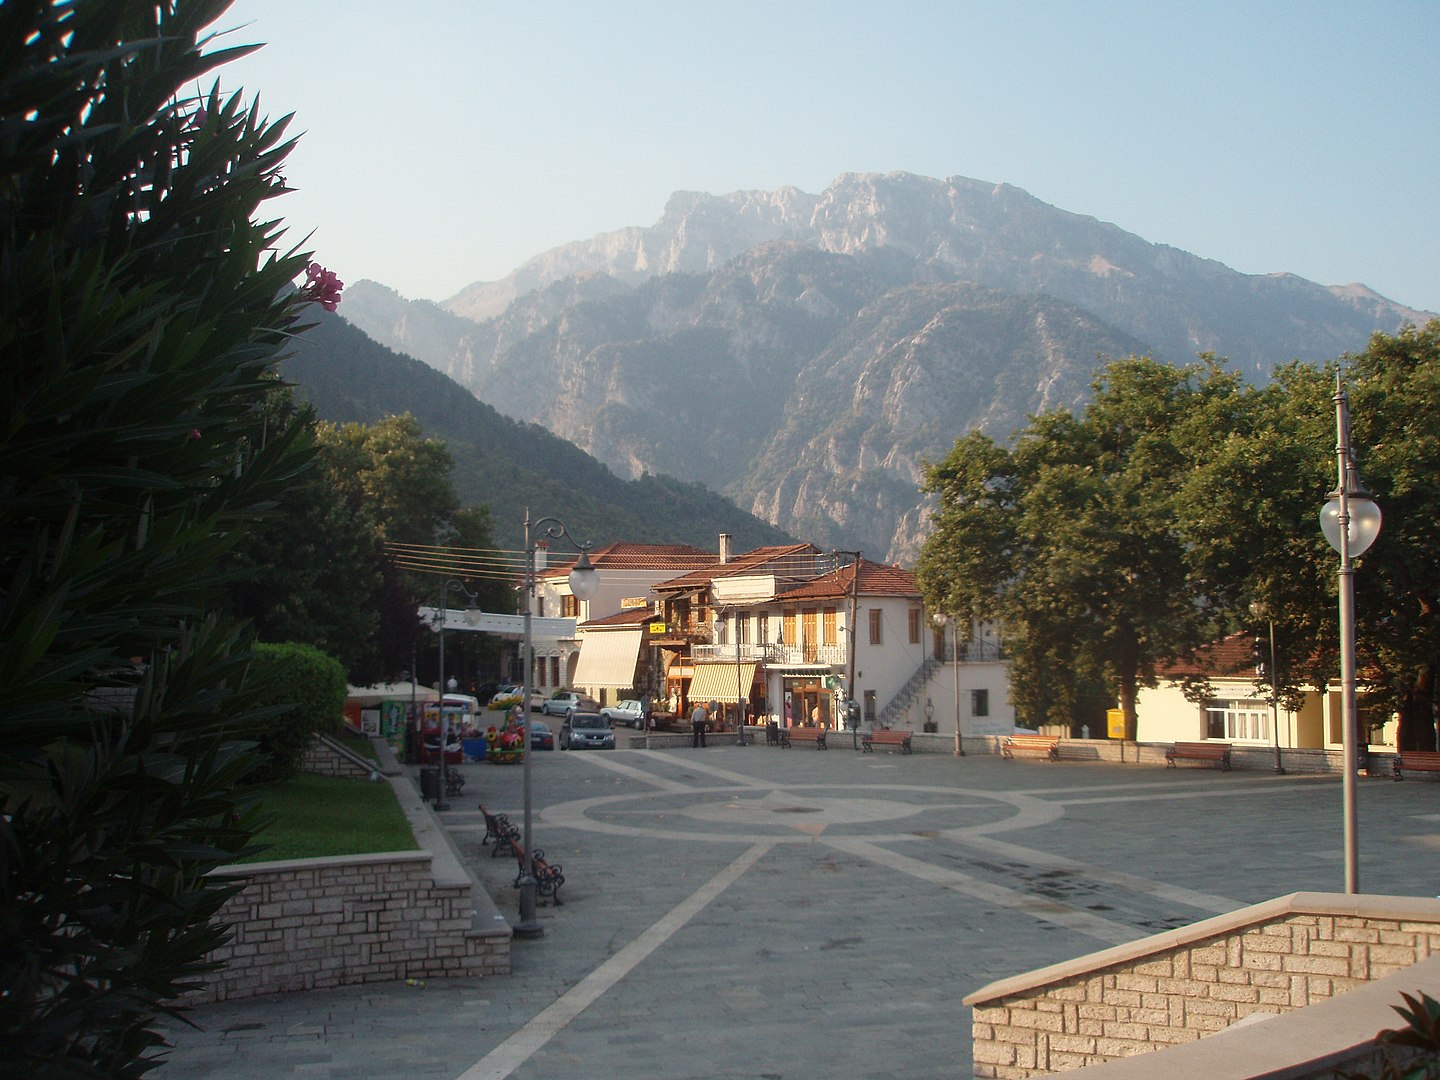 1440px-Konitsa,_Konitsa_municipality,_Ioannina_prefecture,_Greece_-_Central_square_-_02.jpg